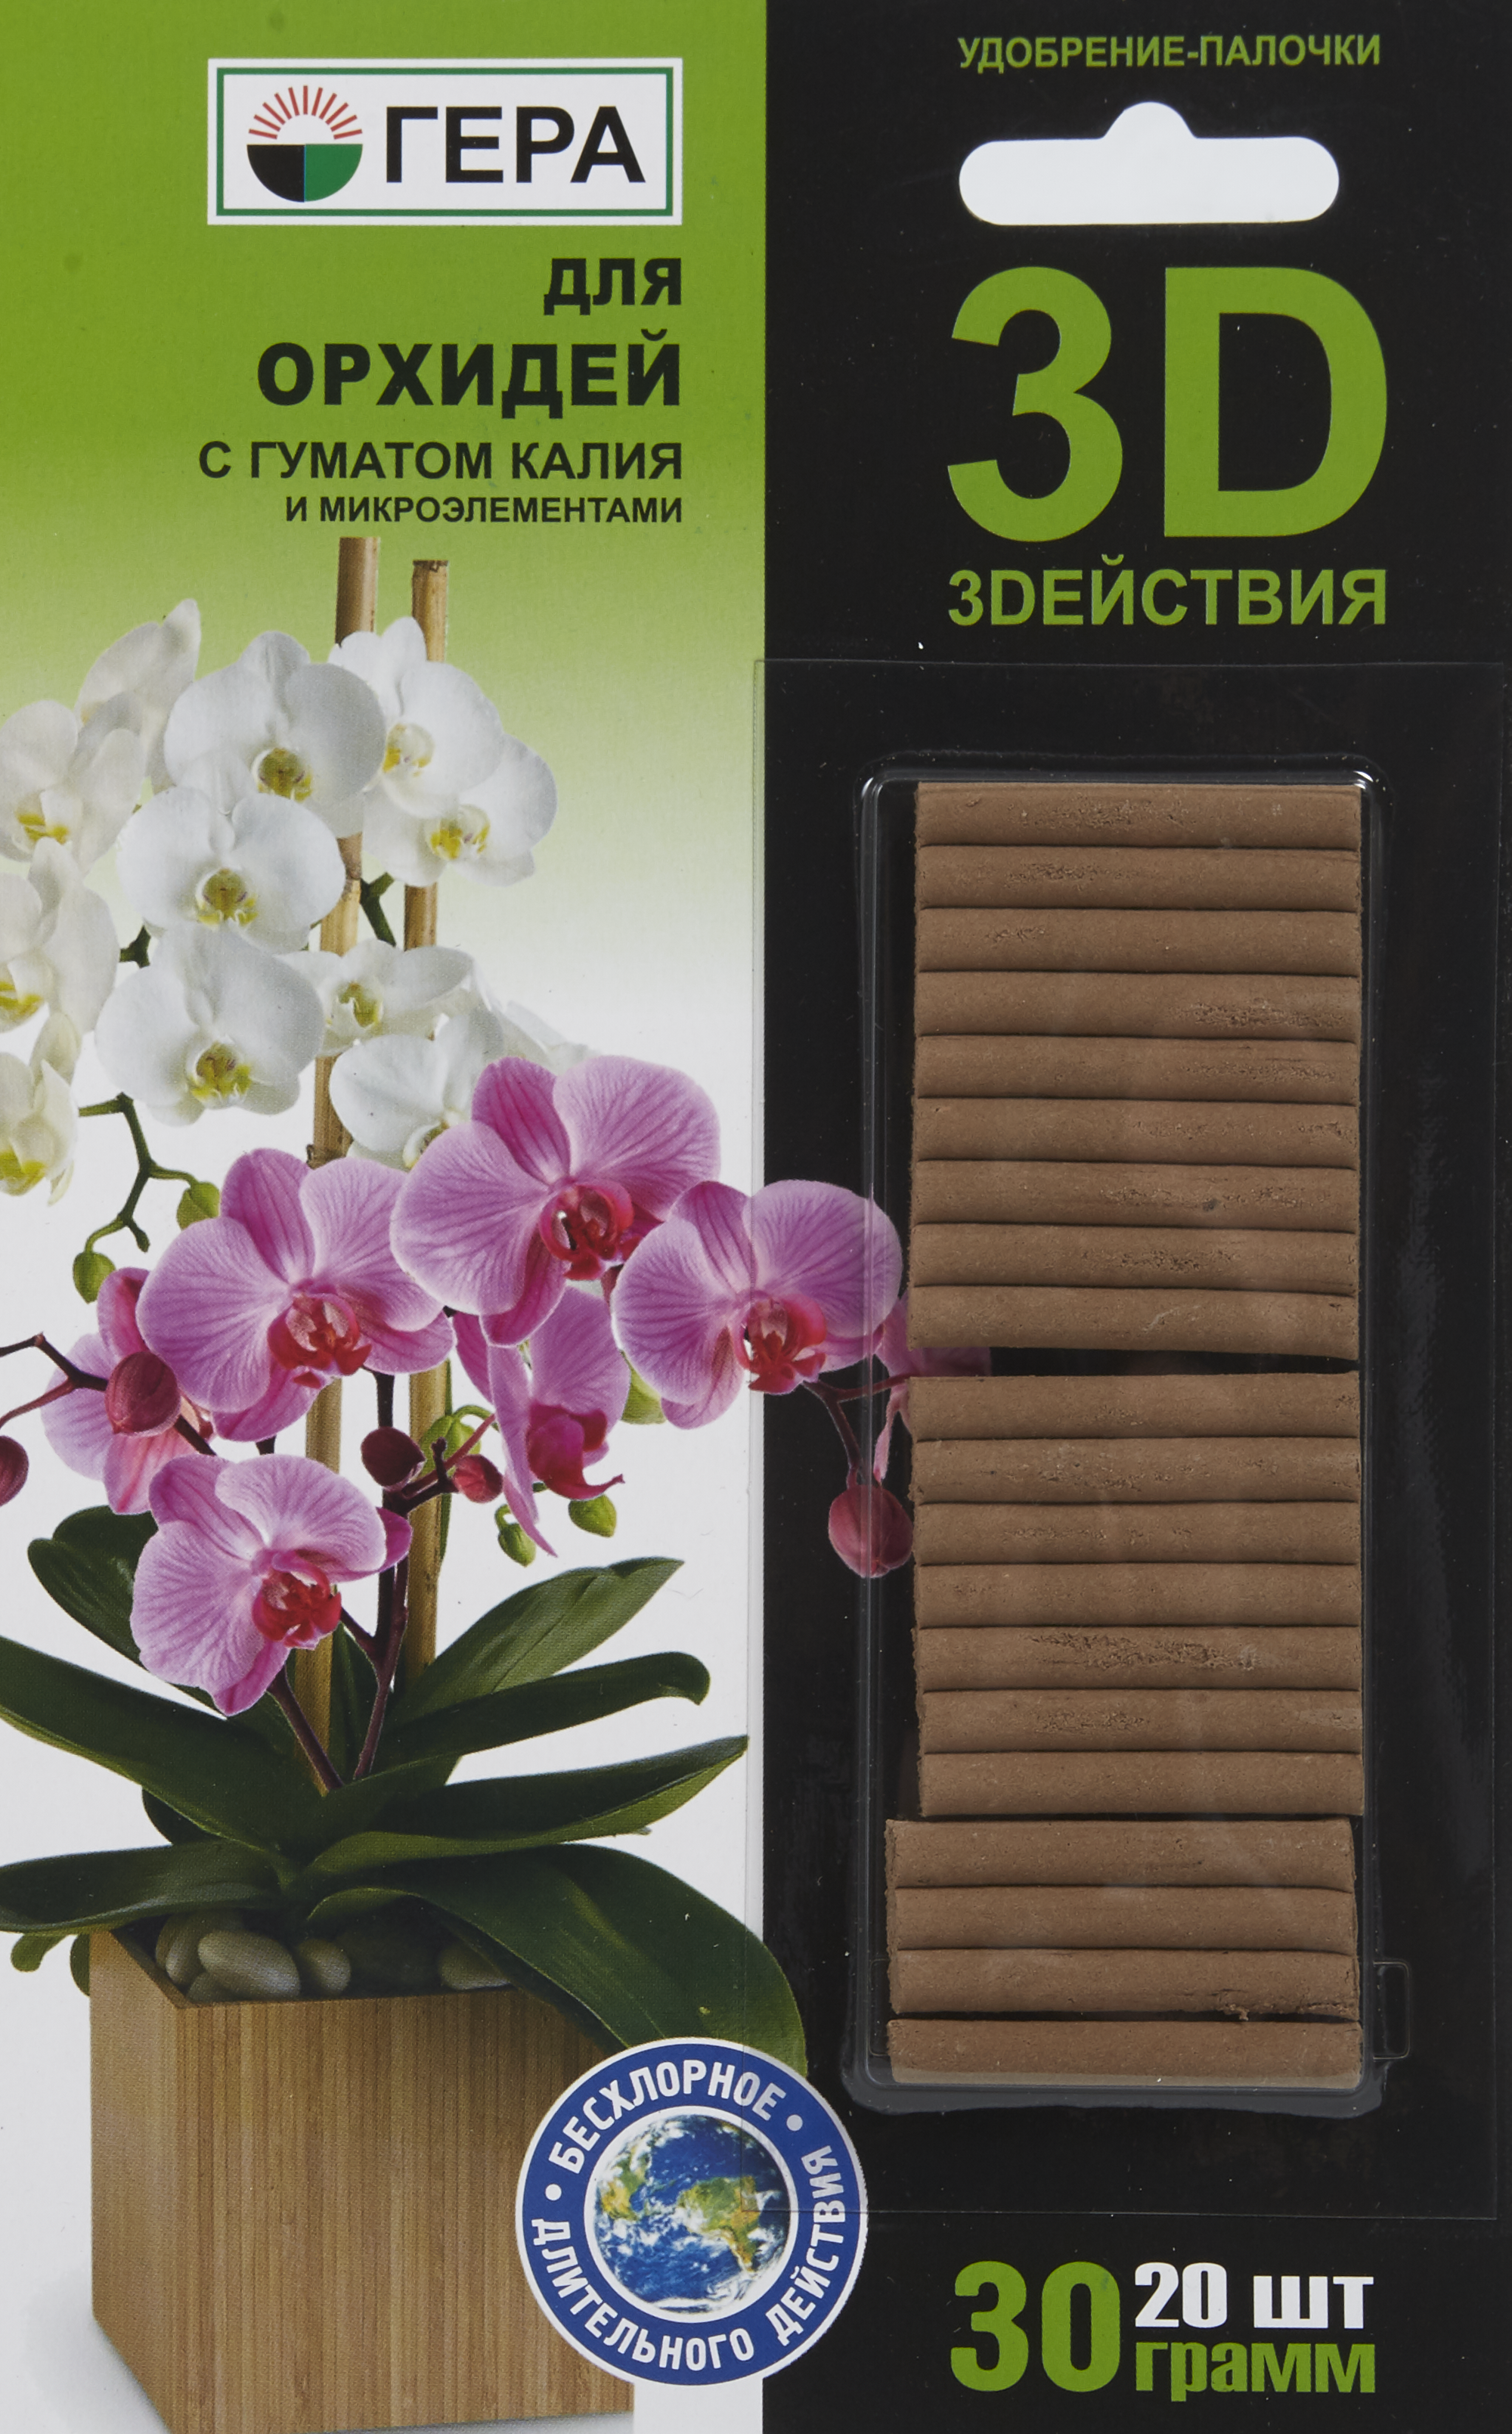 Удобрение-палочки 3D для орхидей, 20 шт. по цене 103 ₽/шт. купить в Москве  в интернет-магазине Леруа Мерлен